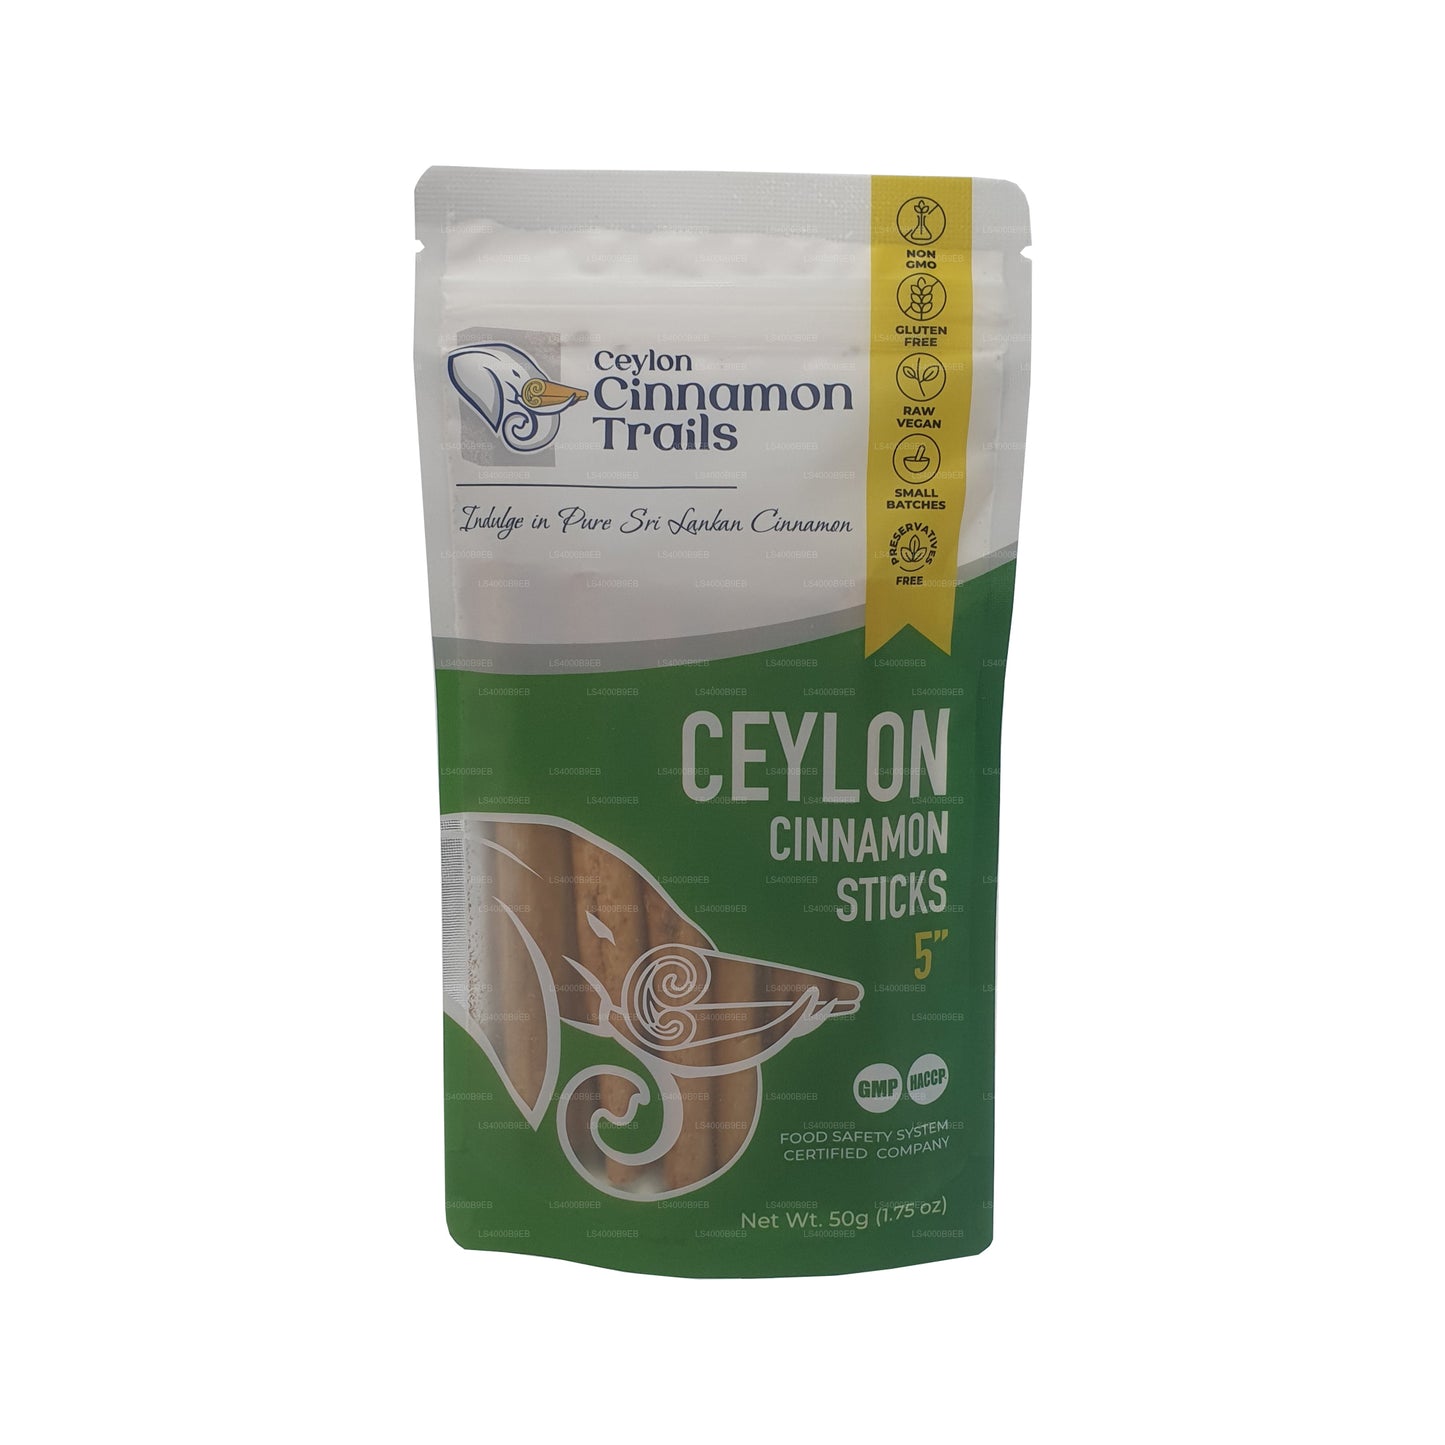 Bâtons de cannelle Ceylon Cinnamon Trails (50 g)